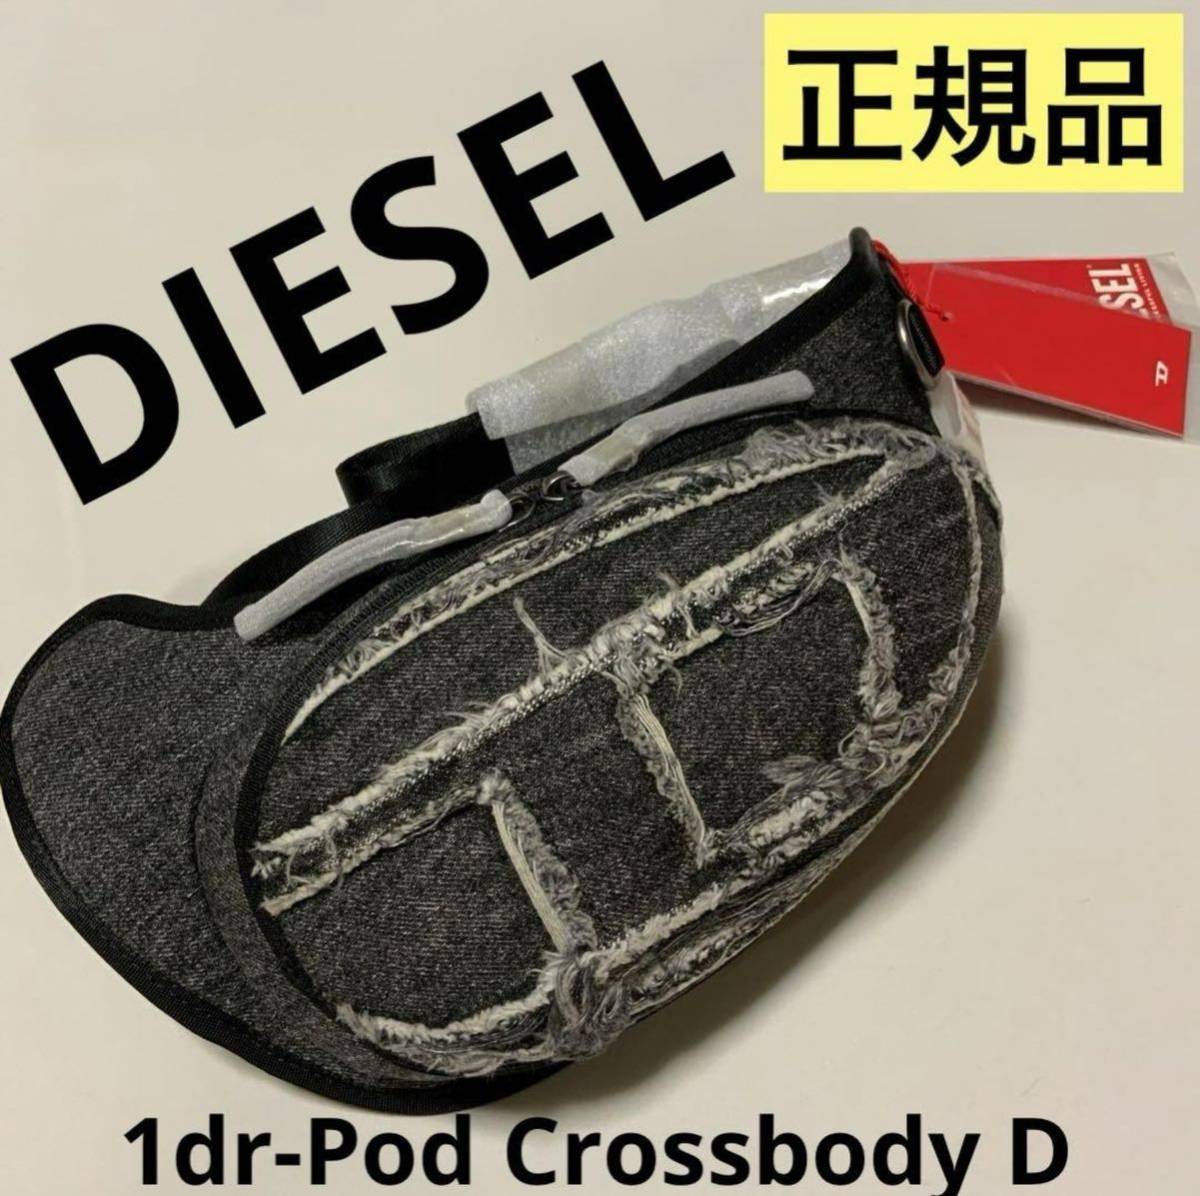 世界の 洗練されたデザイン DIESEL 1dr-Pod Crossbody D X09647 P5759